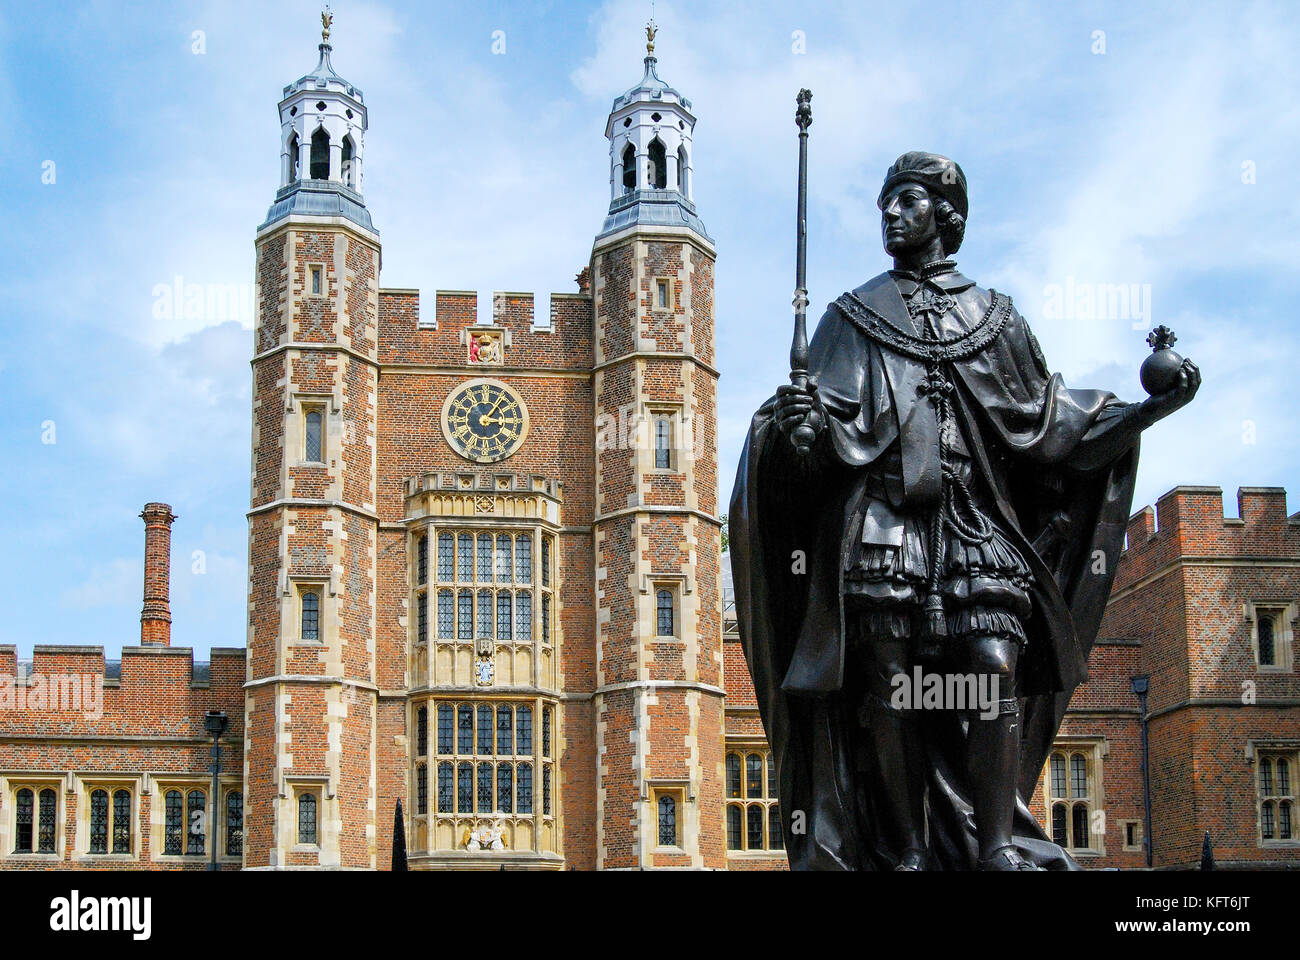 Statue de Henry VI (fondateur) et Lupton's Tower, cour de l'école, Eton College, Eton, Berkshire, Angleterre, Royaume-Uni Banque D'Images